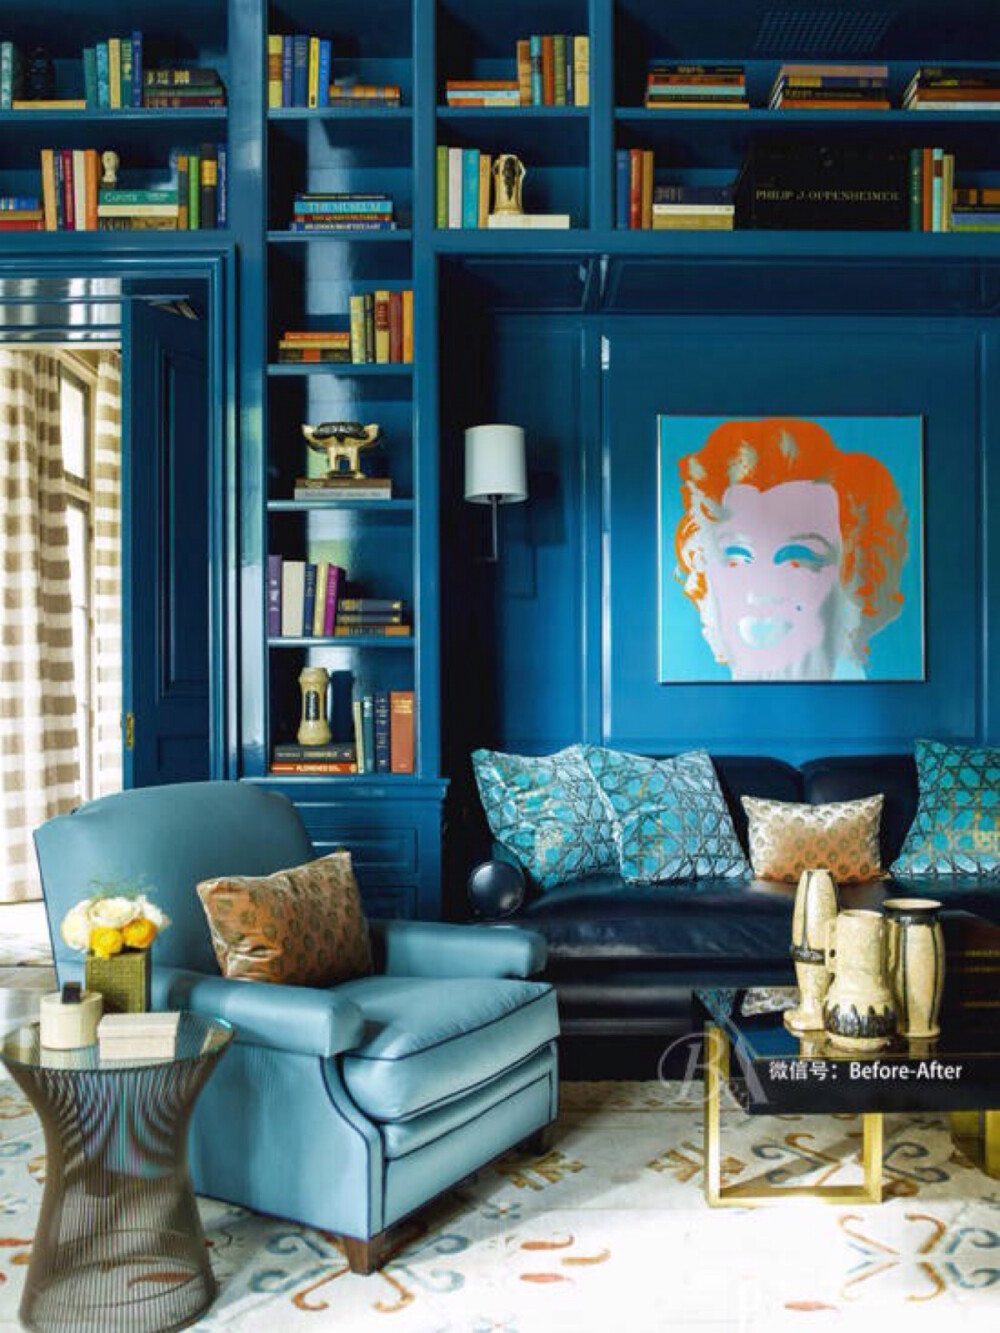  在色彩原理上，蓝与橙互为补色，看似不搭调的色彩，如果使用得当也能对味。这是一间来自芝加哥公寓的书房，墙壁与书架均为浓重的孔雀蓝，使空间酝酿出独特的静谧味道。面积微小的橙色点缀，为孔雀蓝借出温暖火光，一点点亮色也能提升温度，带来热情的跳跃感。